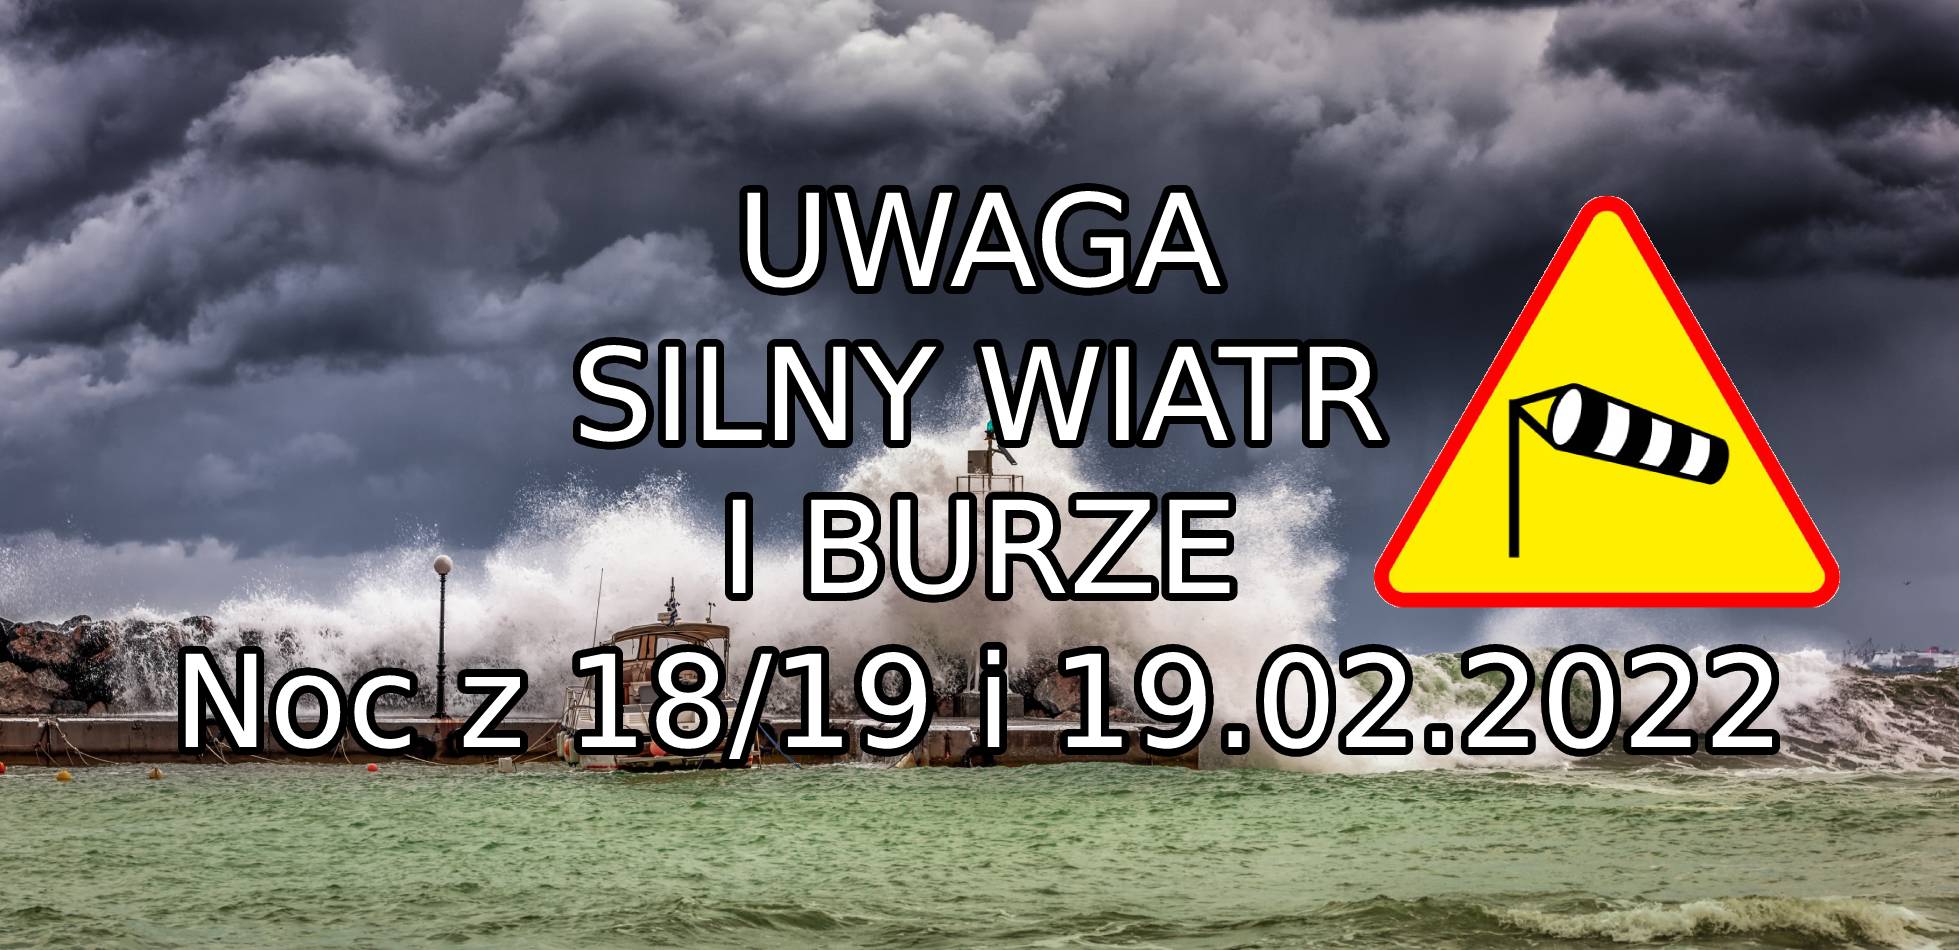 Ostrzeżenie przed silnym wiatrem na noc ze piątku na sobotę i sobotę (18/19 i 19.02.2022)